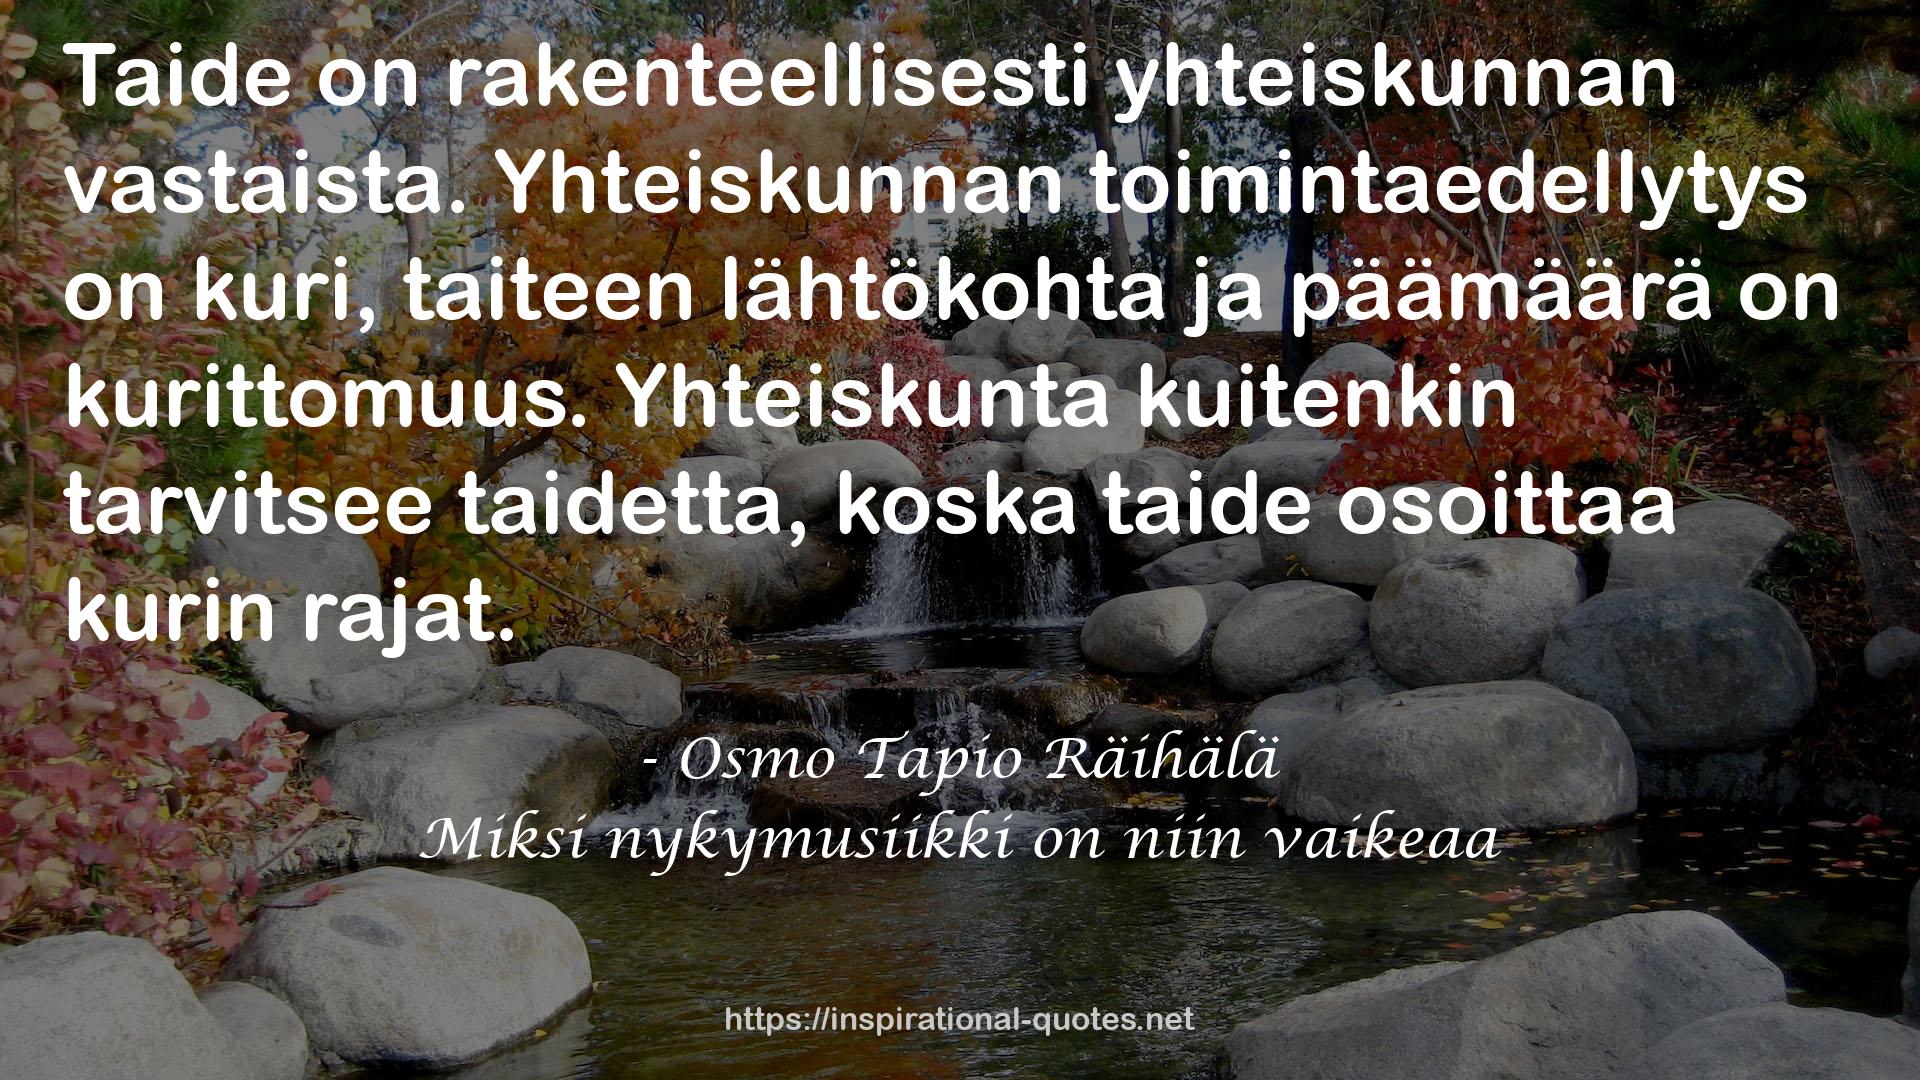 Osmo Tapio Räihälä QUOTES